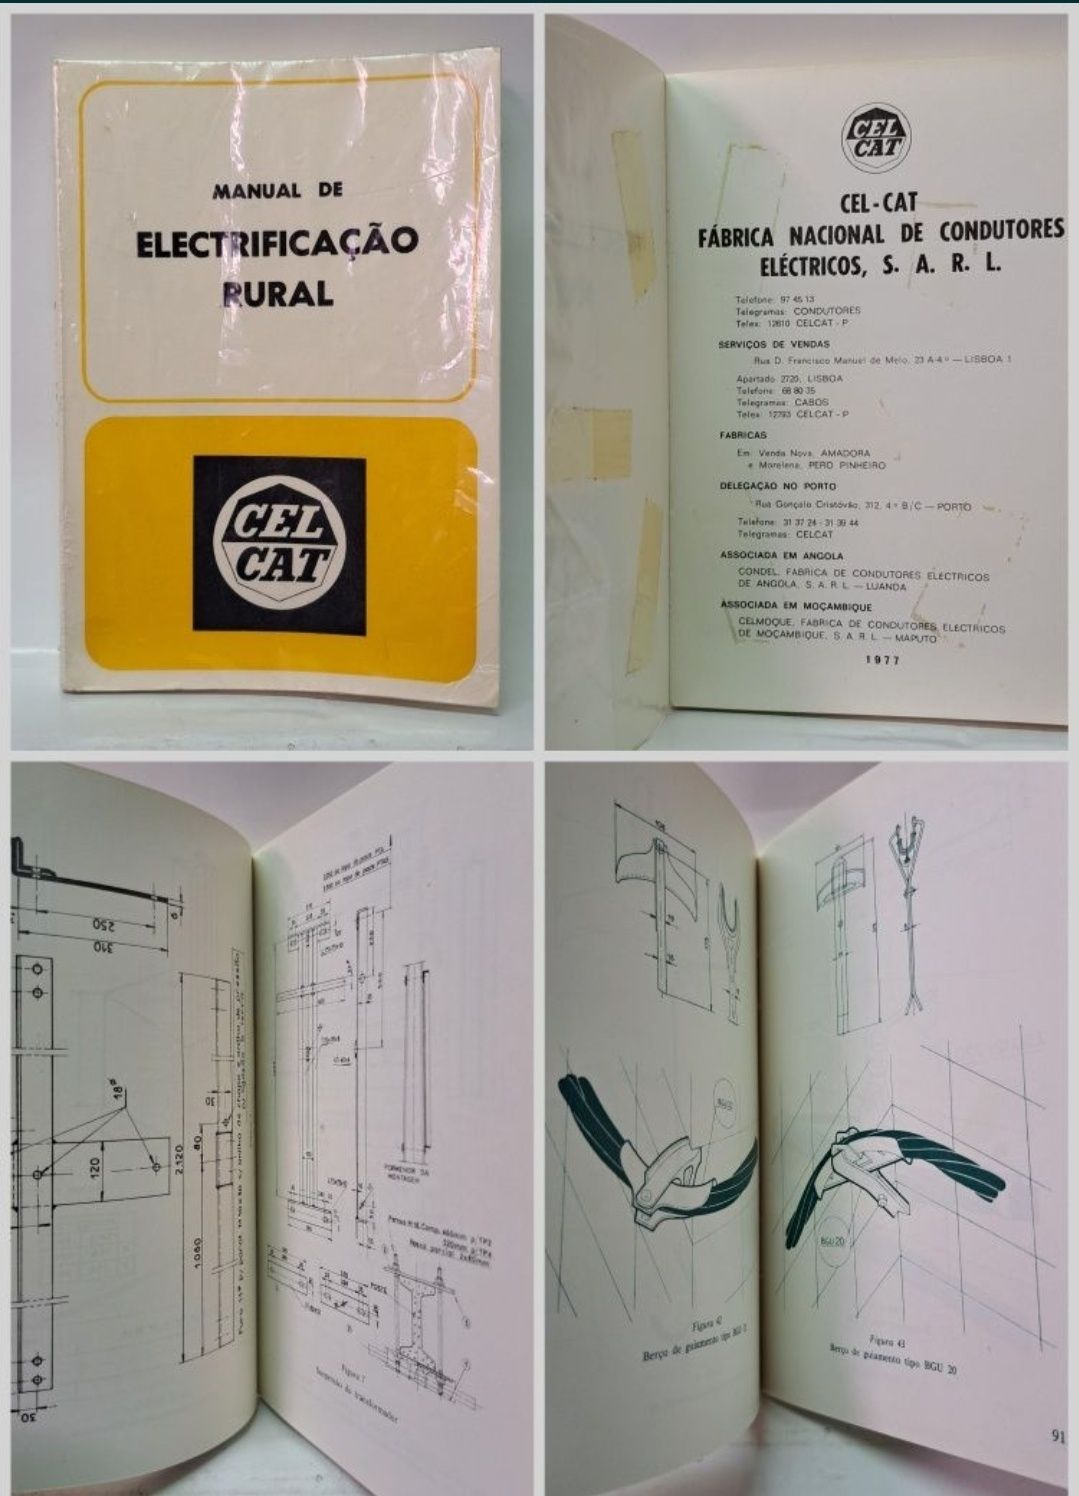 Manual de Electrificação Rural CEL-CAT

Ano 1977

Páginas 144

Entregu